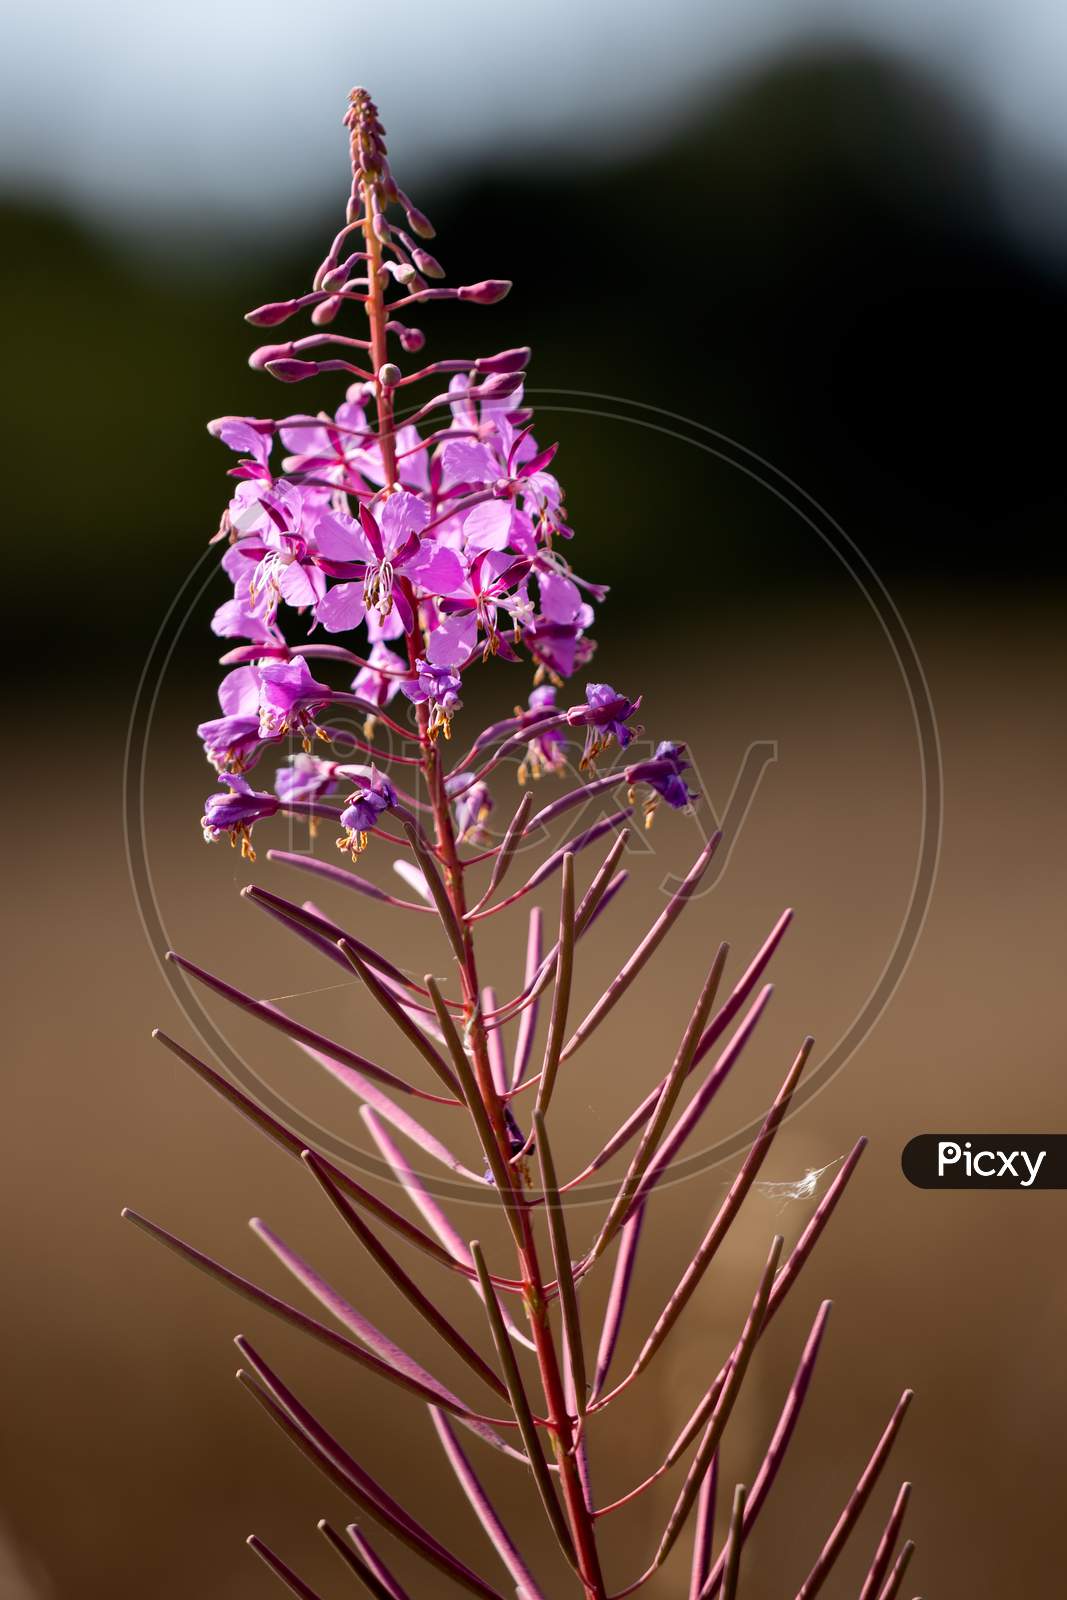 Rosebay Willowherb (Epilobium Angustifolium) Flowering By A Roadside In East Grinstead